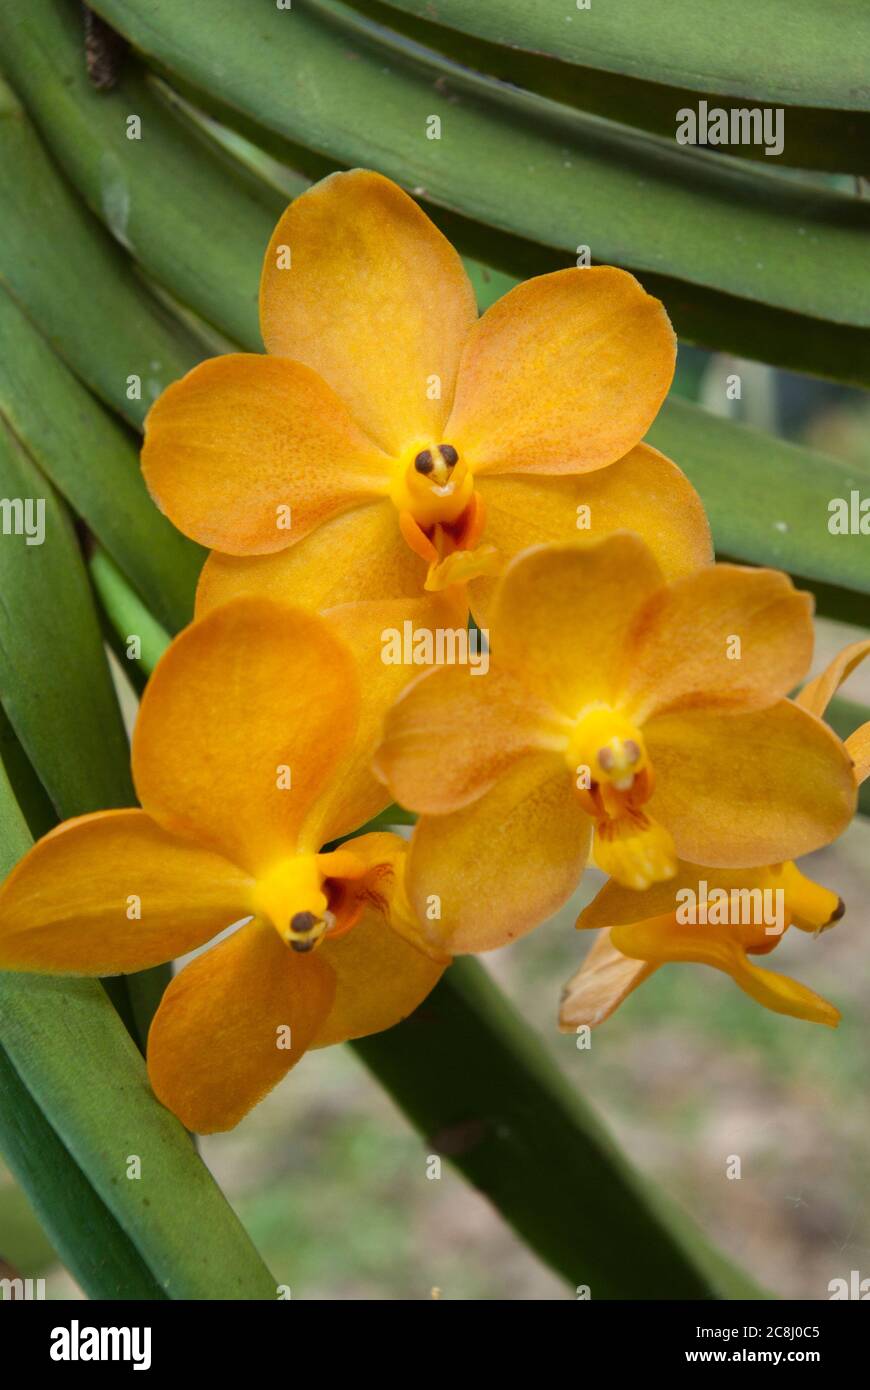 Yellow Vanda Orchid in garden Stock Photo